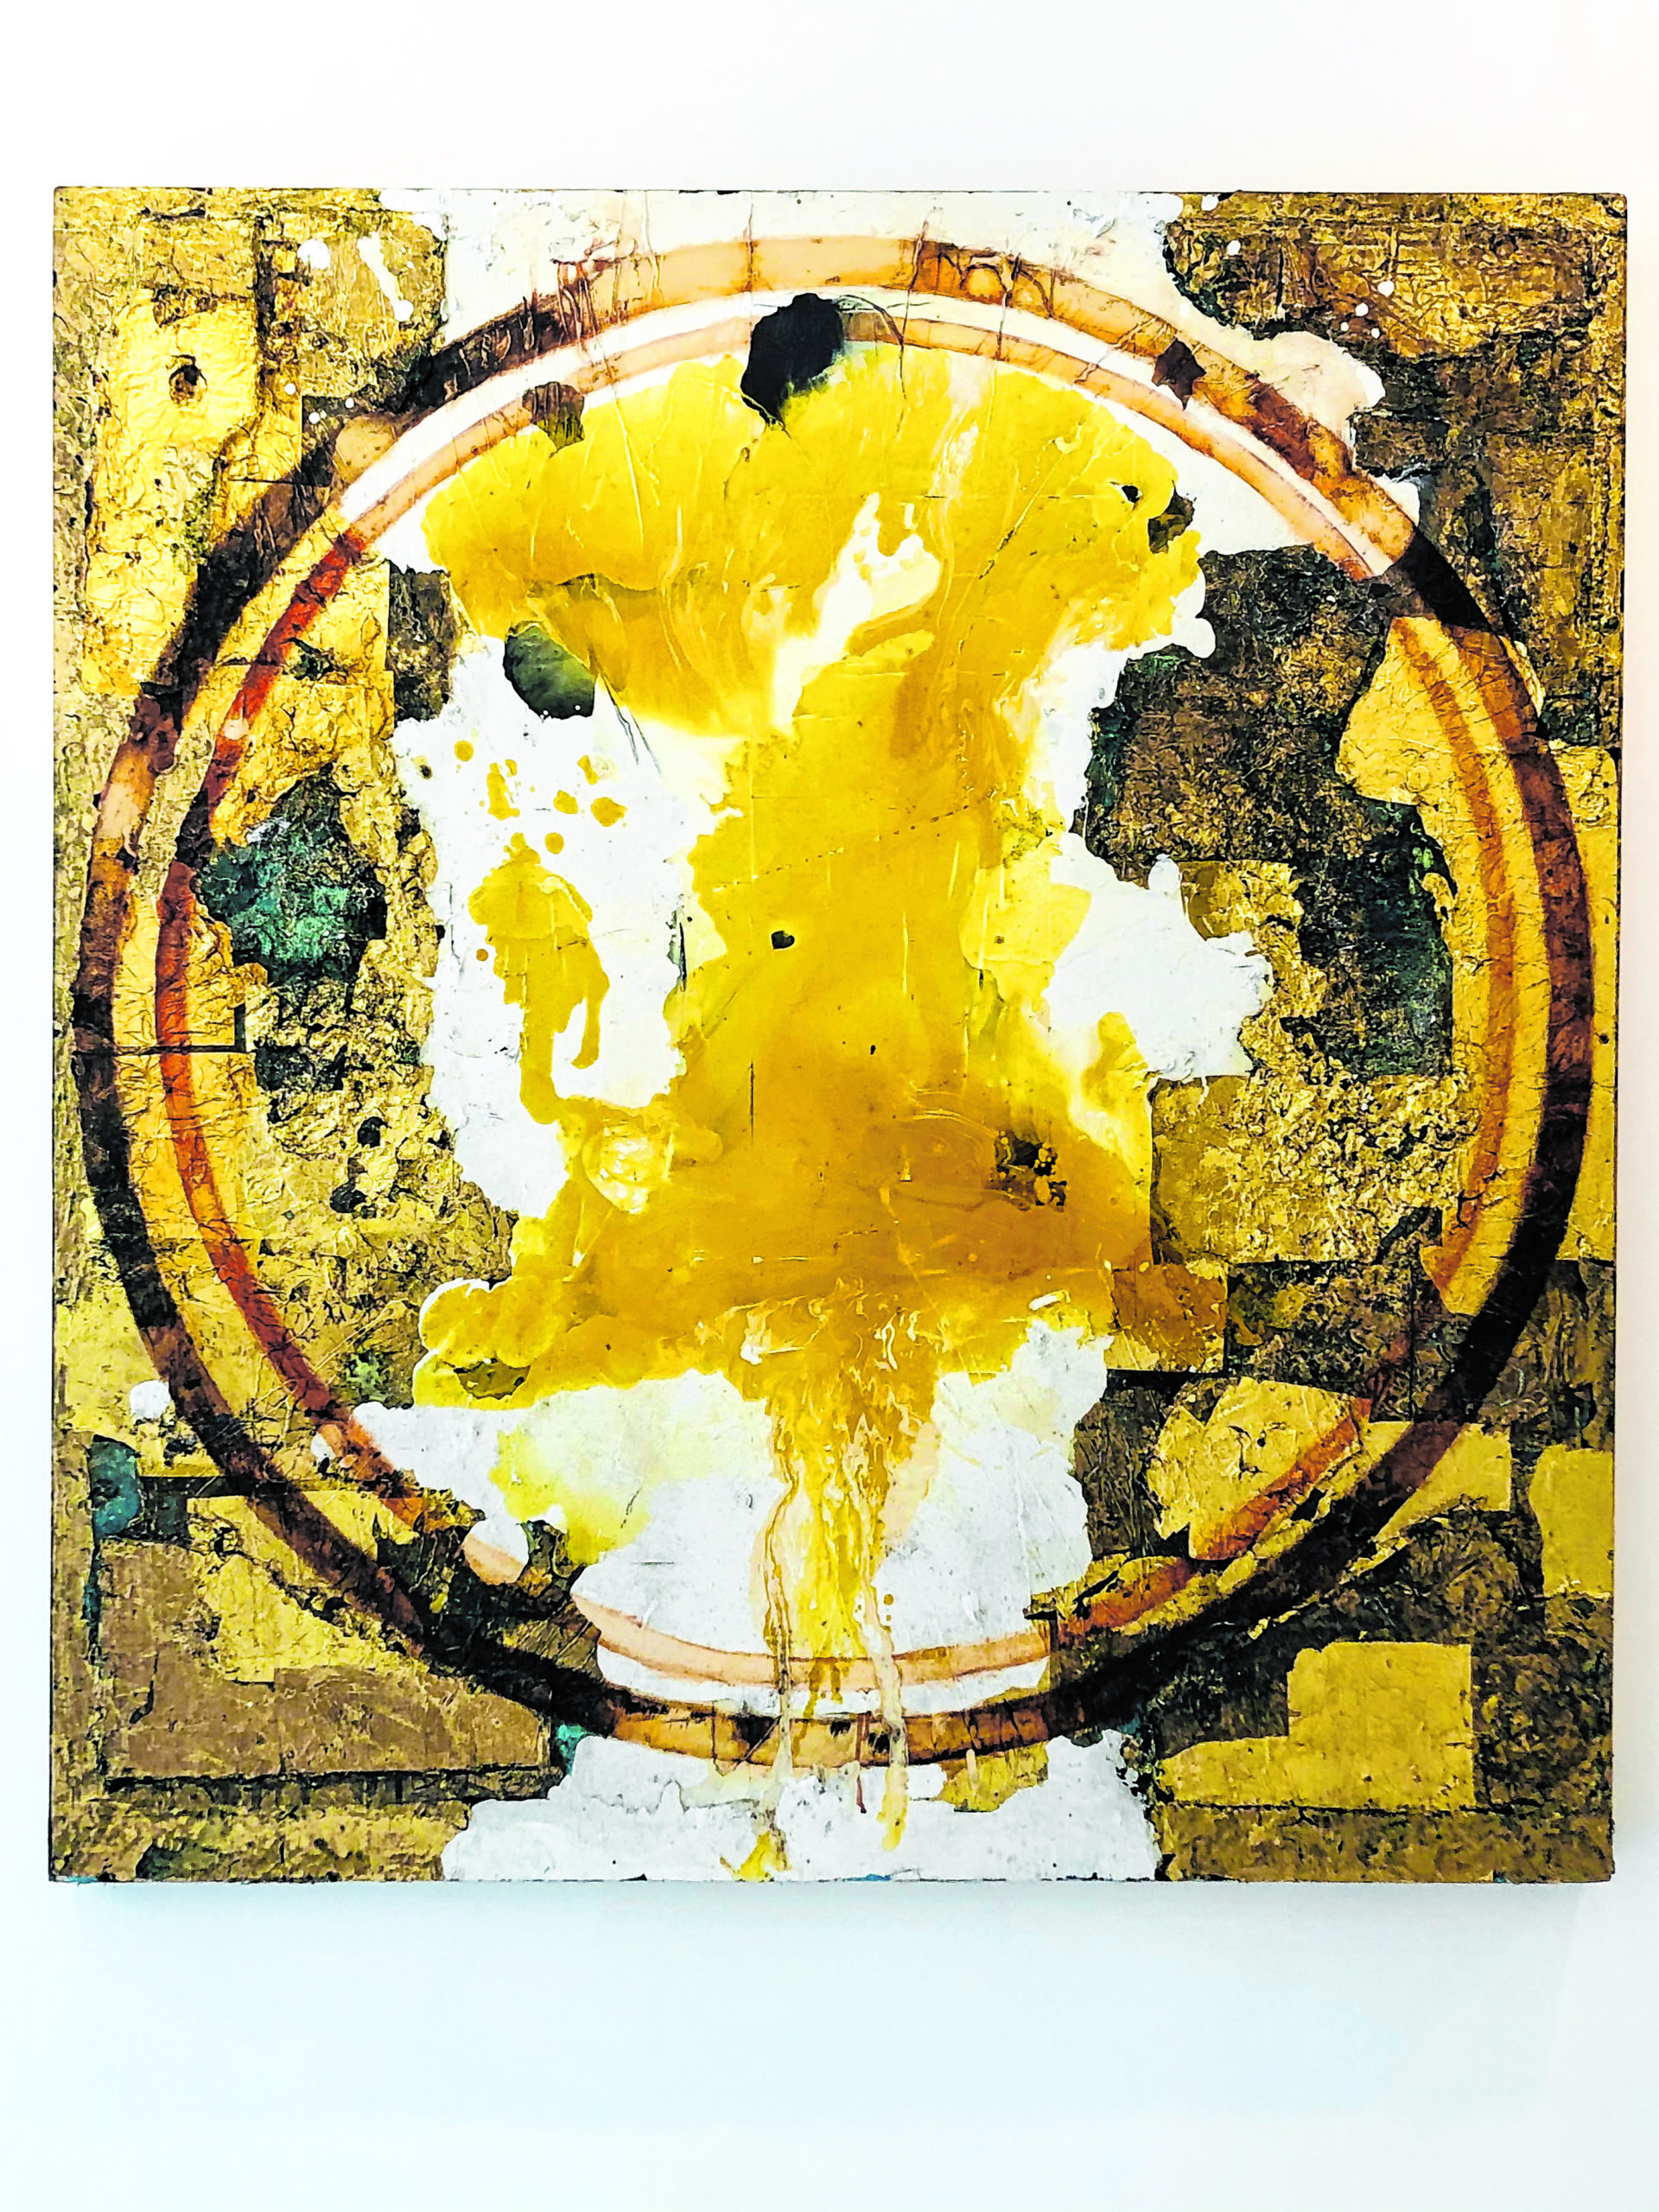 David Geiser's “Gold Round Piece,” also on view at Keyes Art Gallery